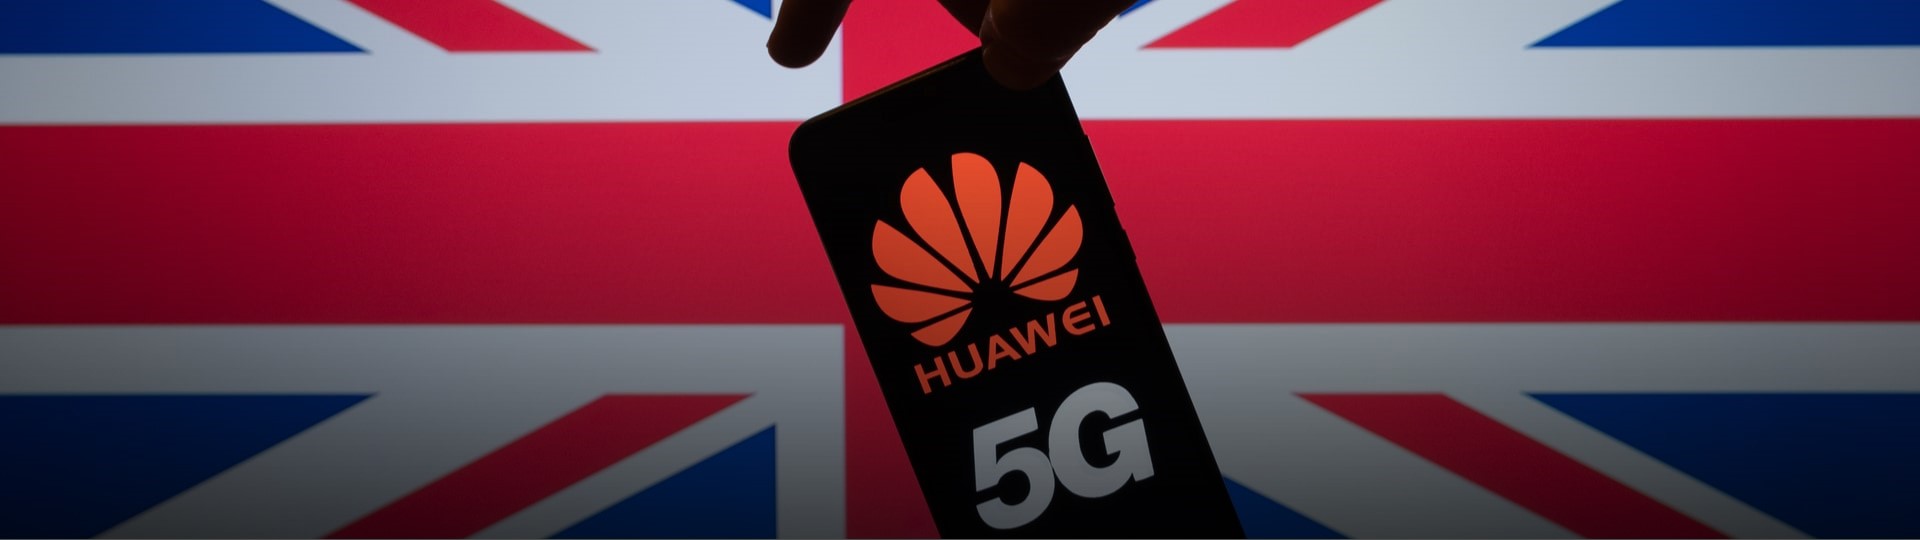 Britské firmy nesmějí instalovat do sítí 5G zařízení od Huawei